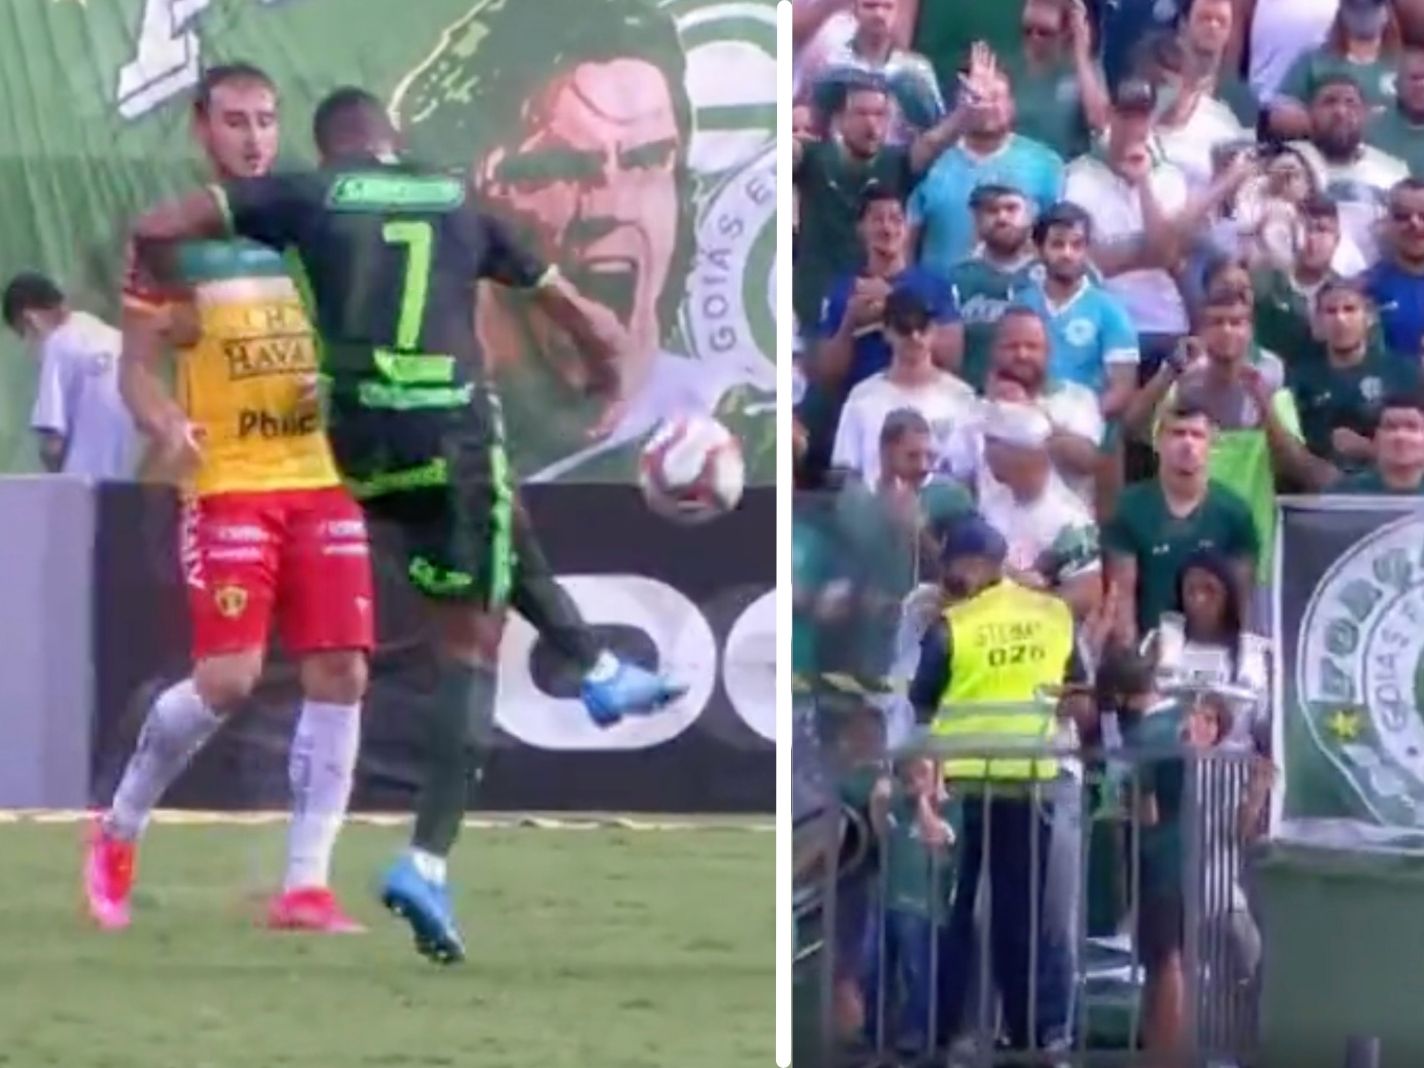 Goias defensive midfielder Rezende Miranda knocks out football fan with wayward shot